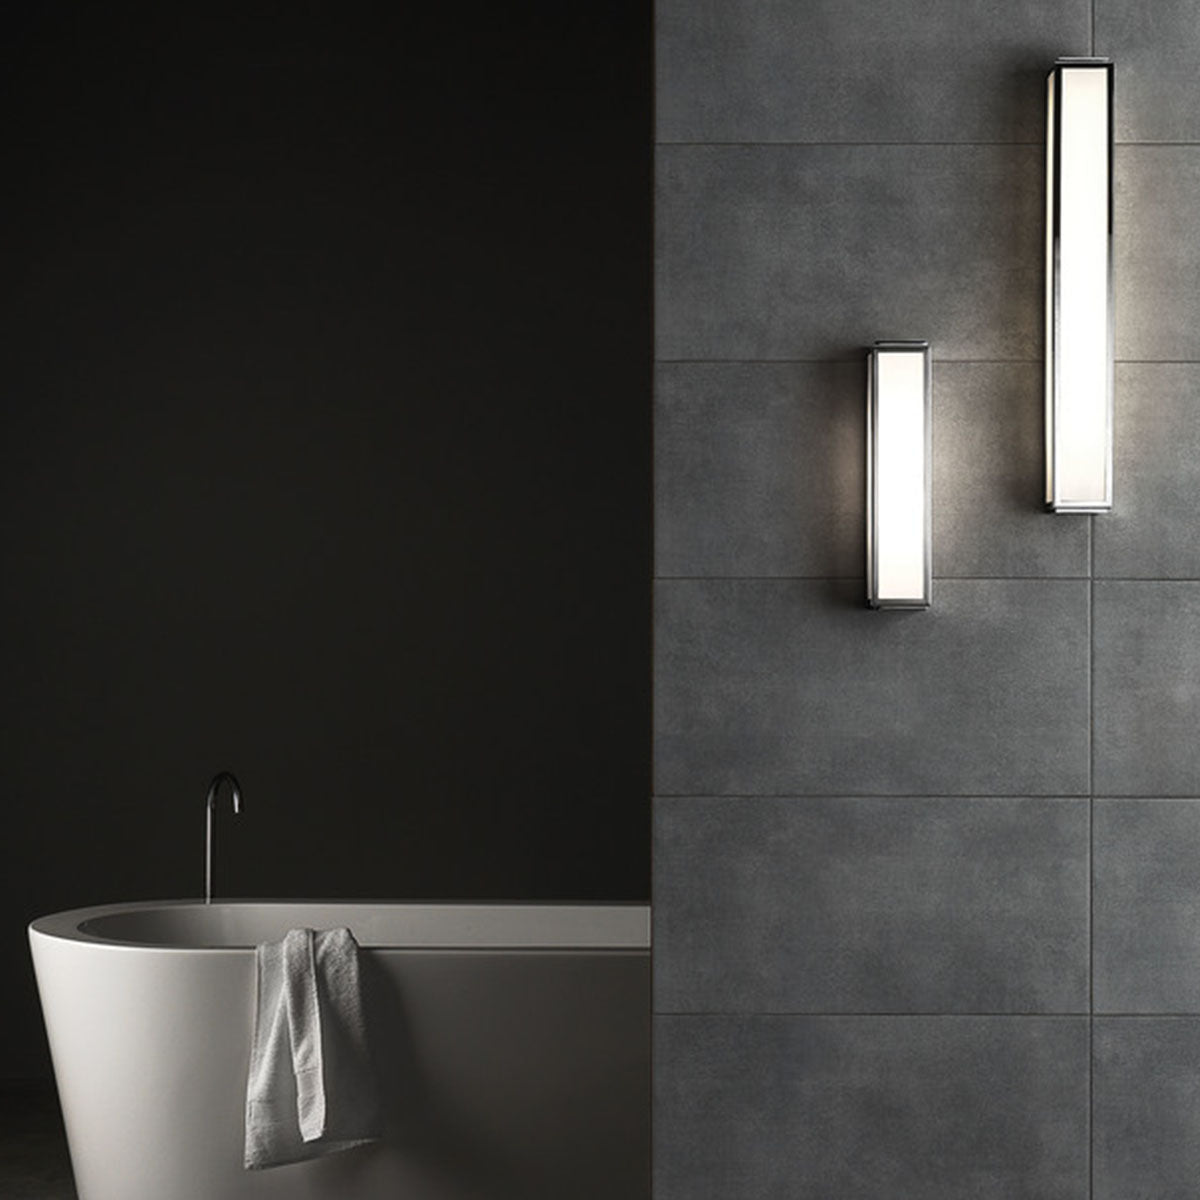 Modena Rectangular Bathroom Light lifestyle Polished Chrome